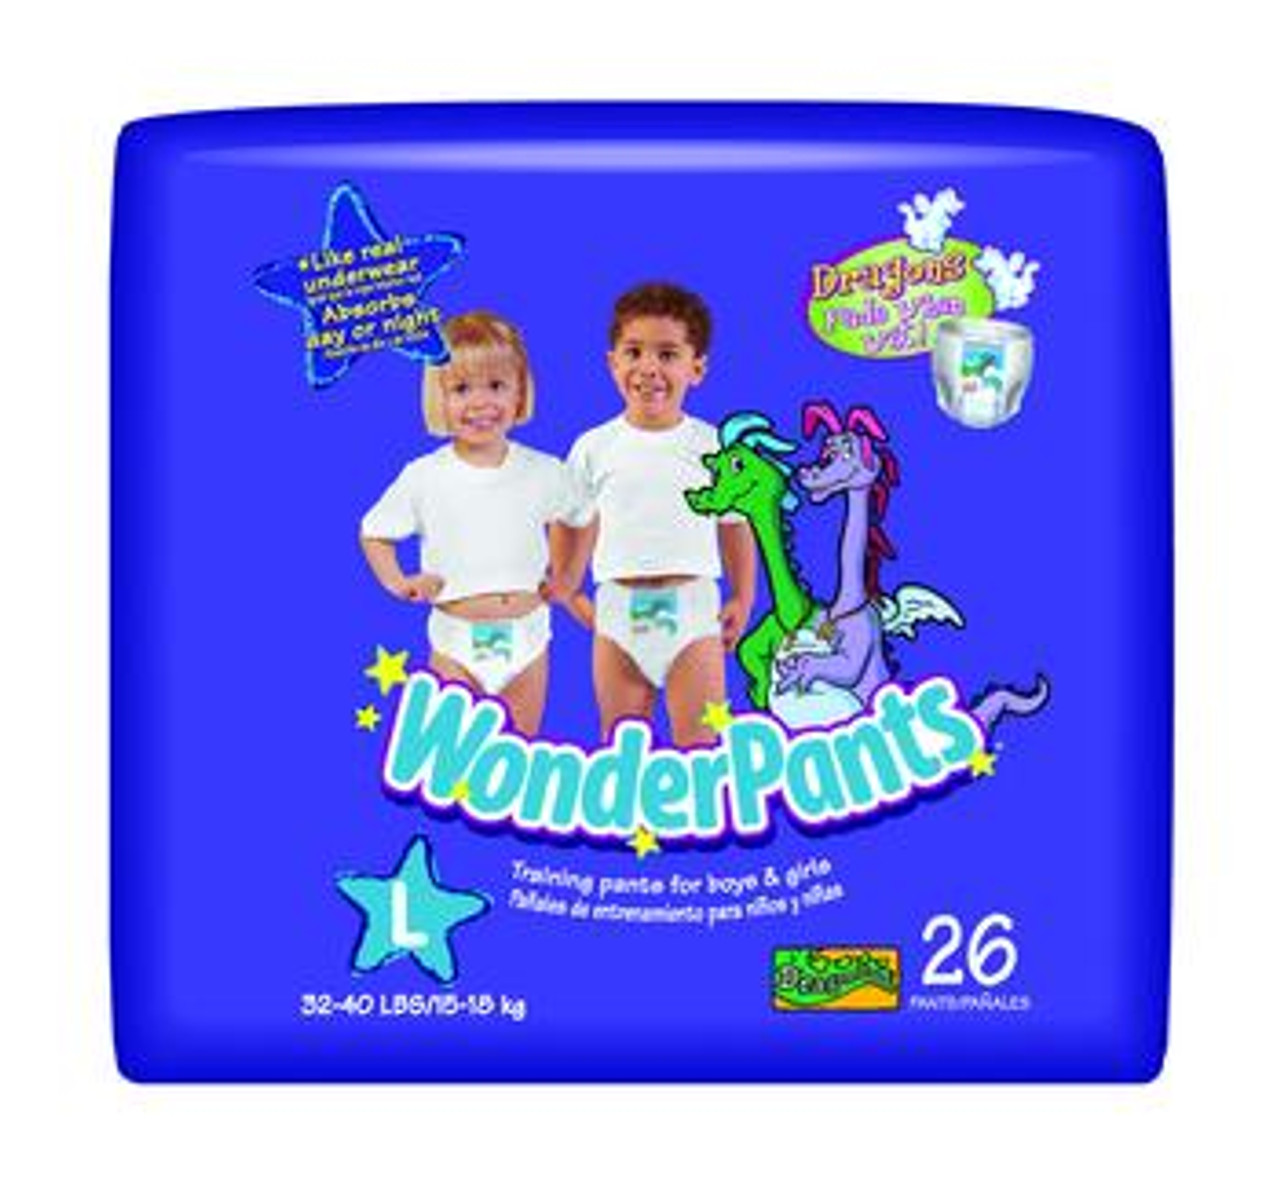 Huggies Wonderpants Review by Maaofallblogs! - YouTube